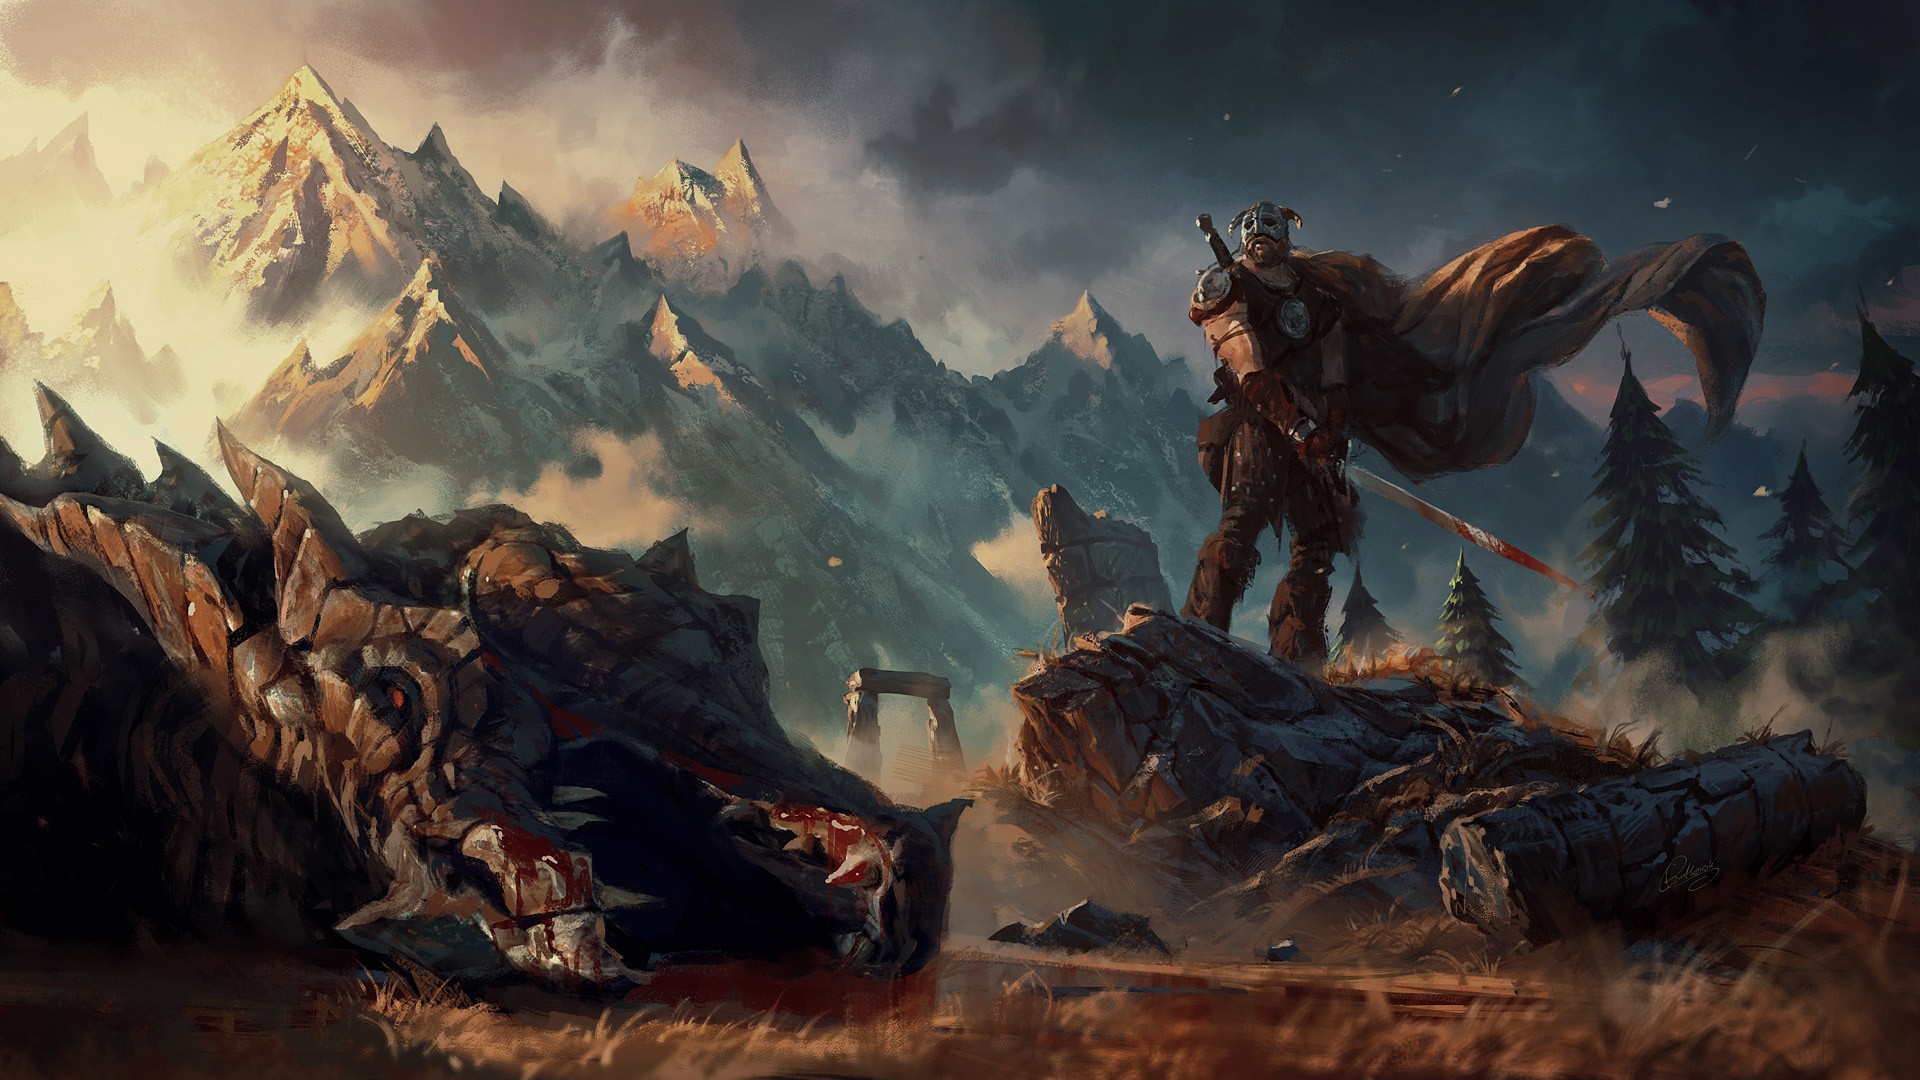 fantasy art, Artwork, Video games, The Elder Scrolls V: Skyrim Wallpaper